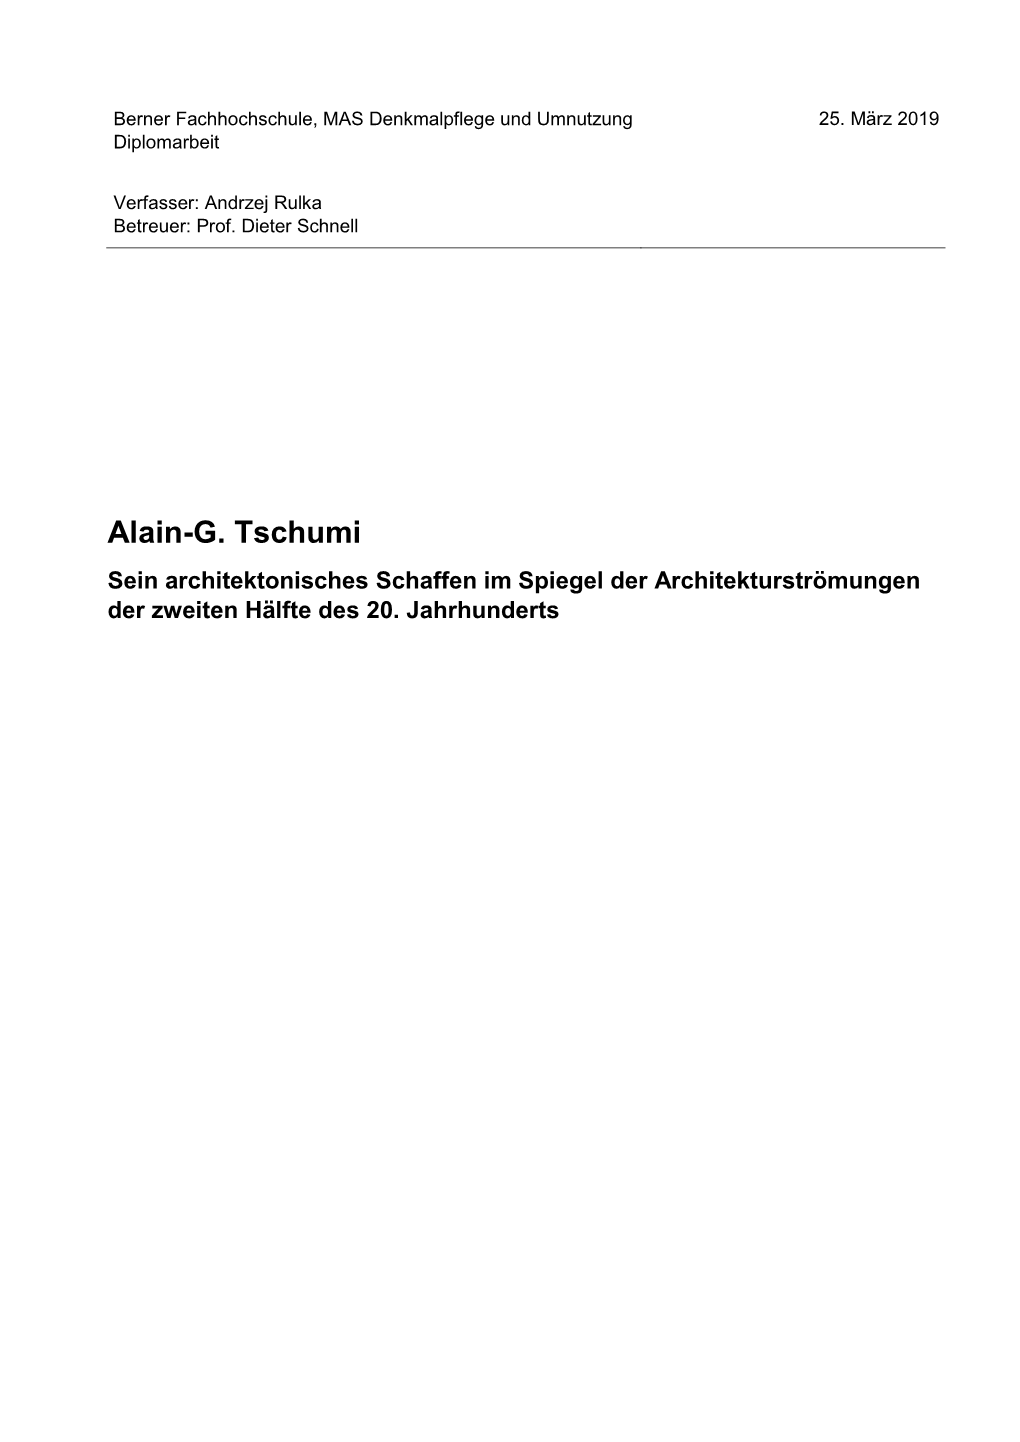 Alain-G. Tschumi Sein Architektonisches Schaffen Im Spiegel Der Architekturströmungen Der Zweiten Hälfte Des 20